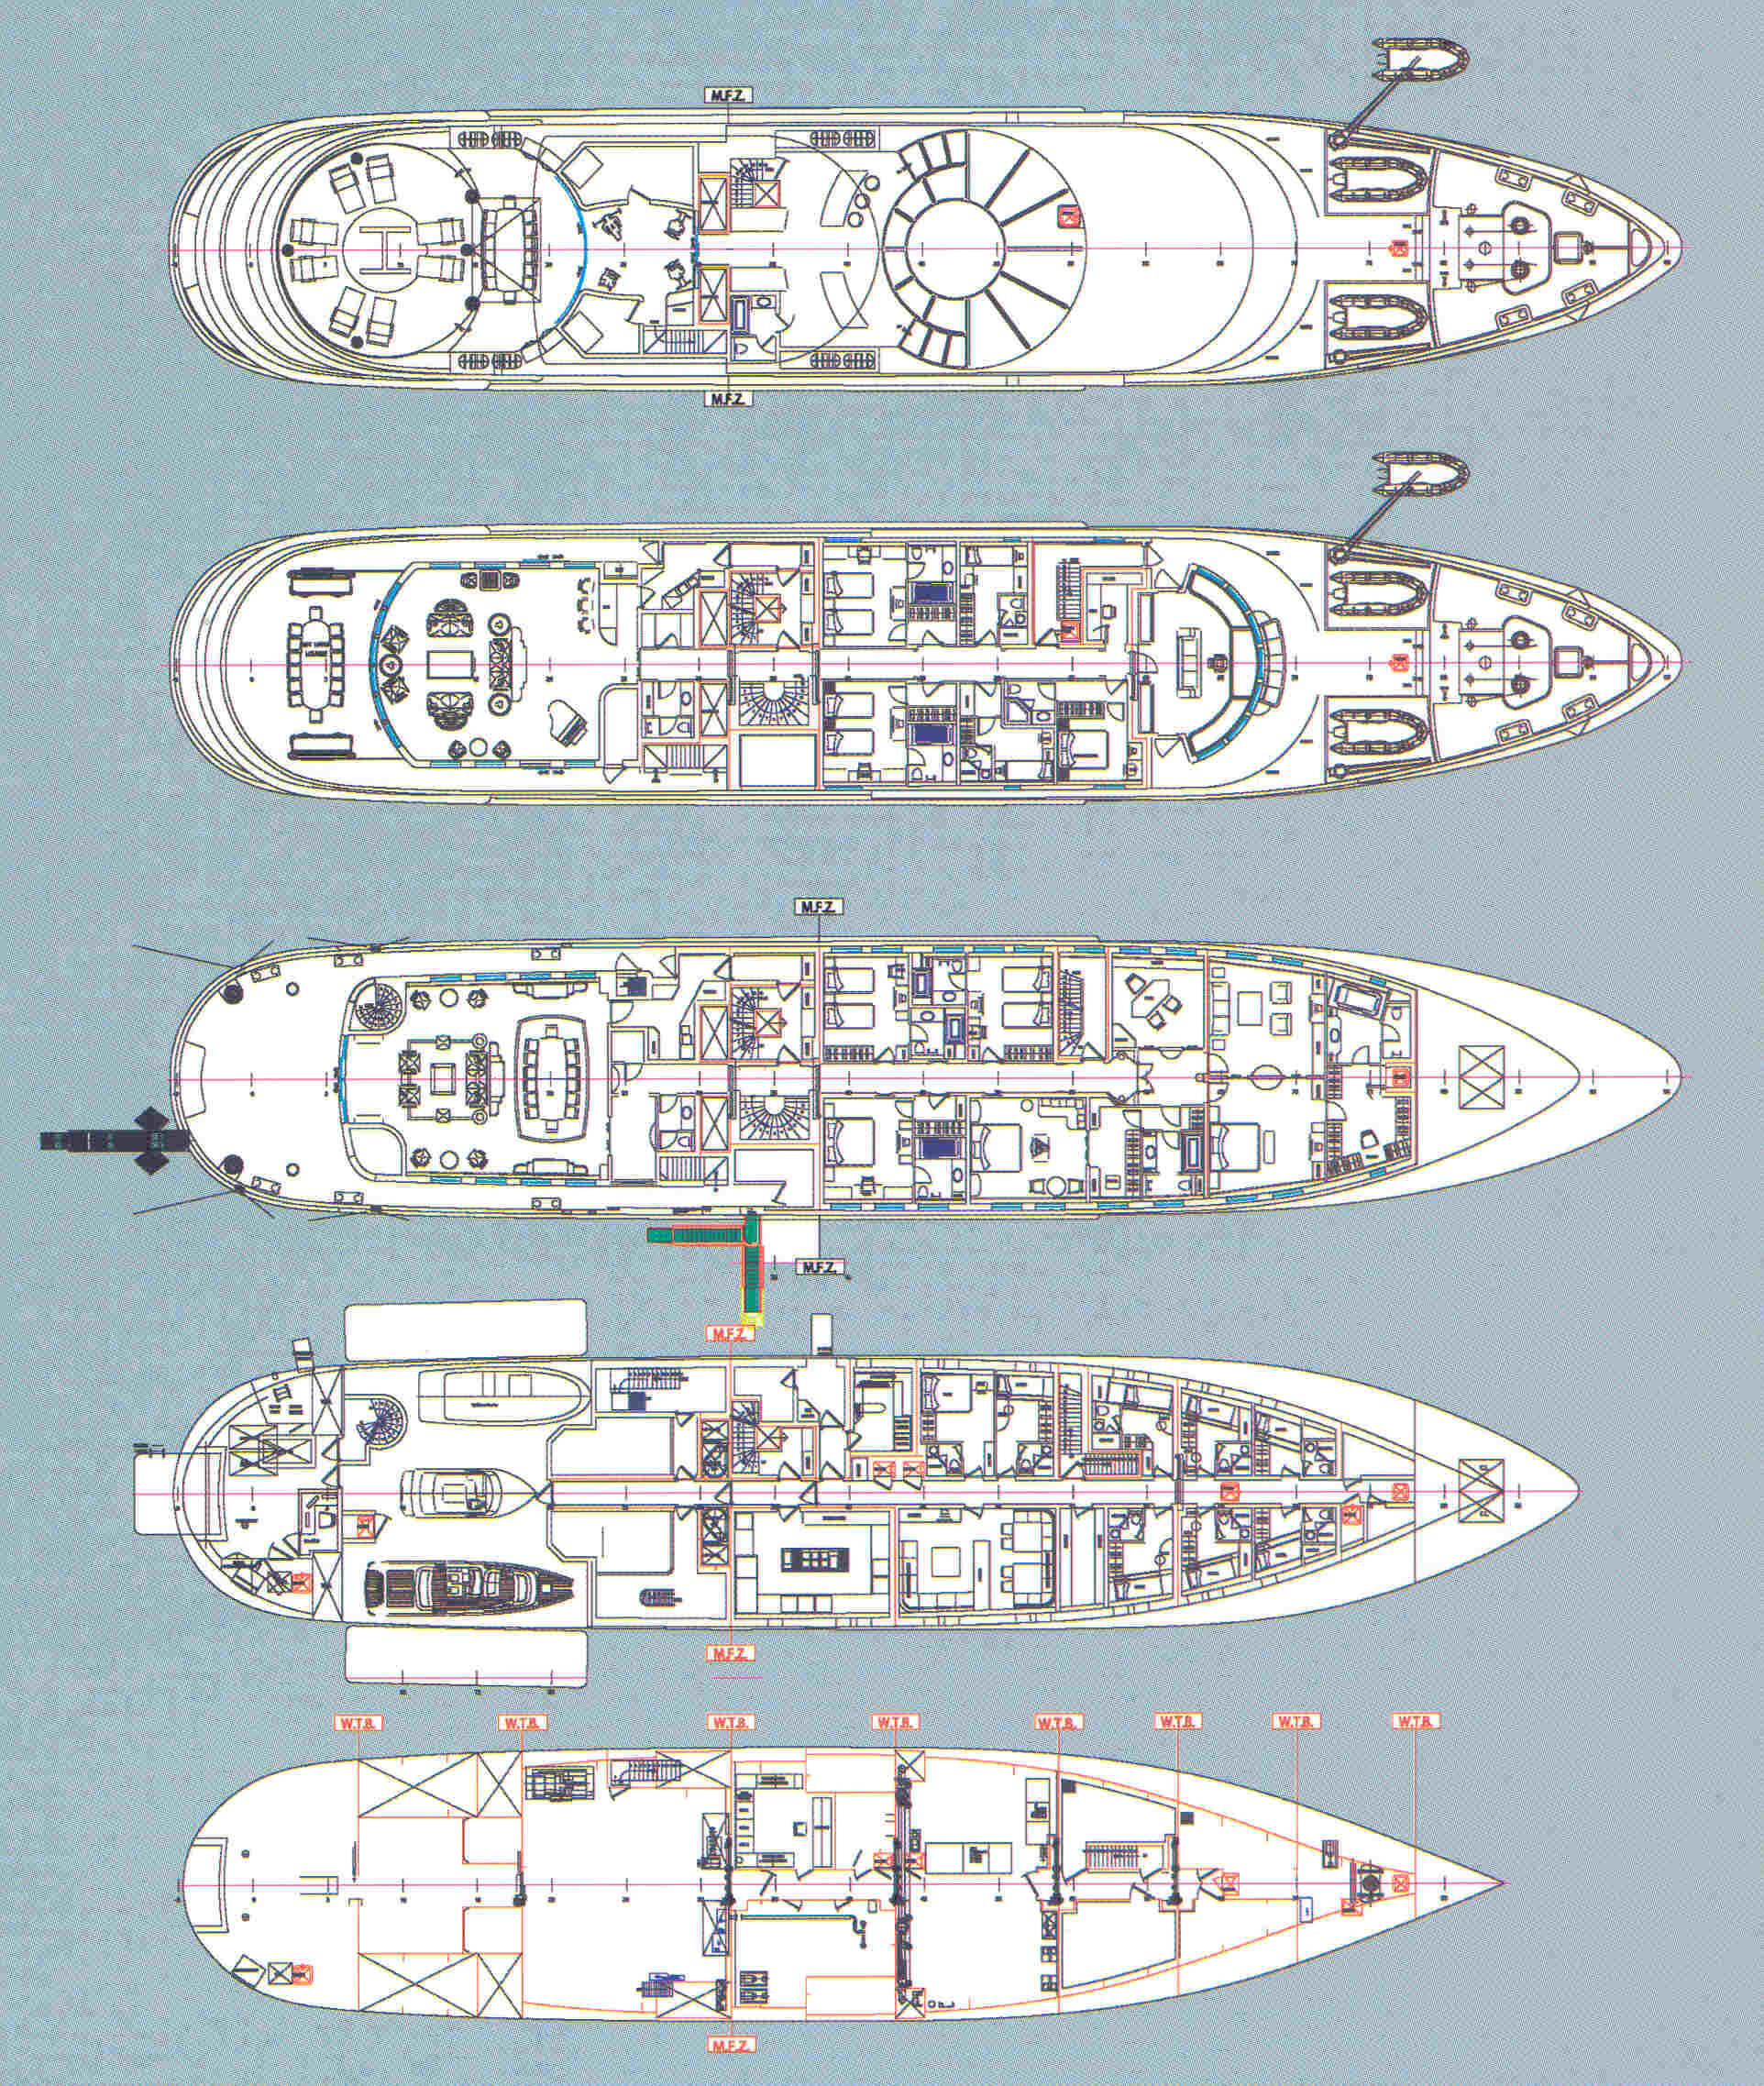 yersin yacht layout